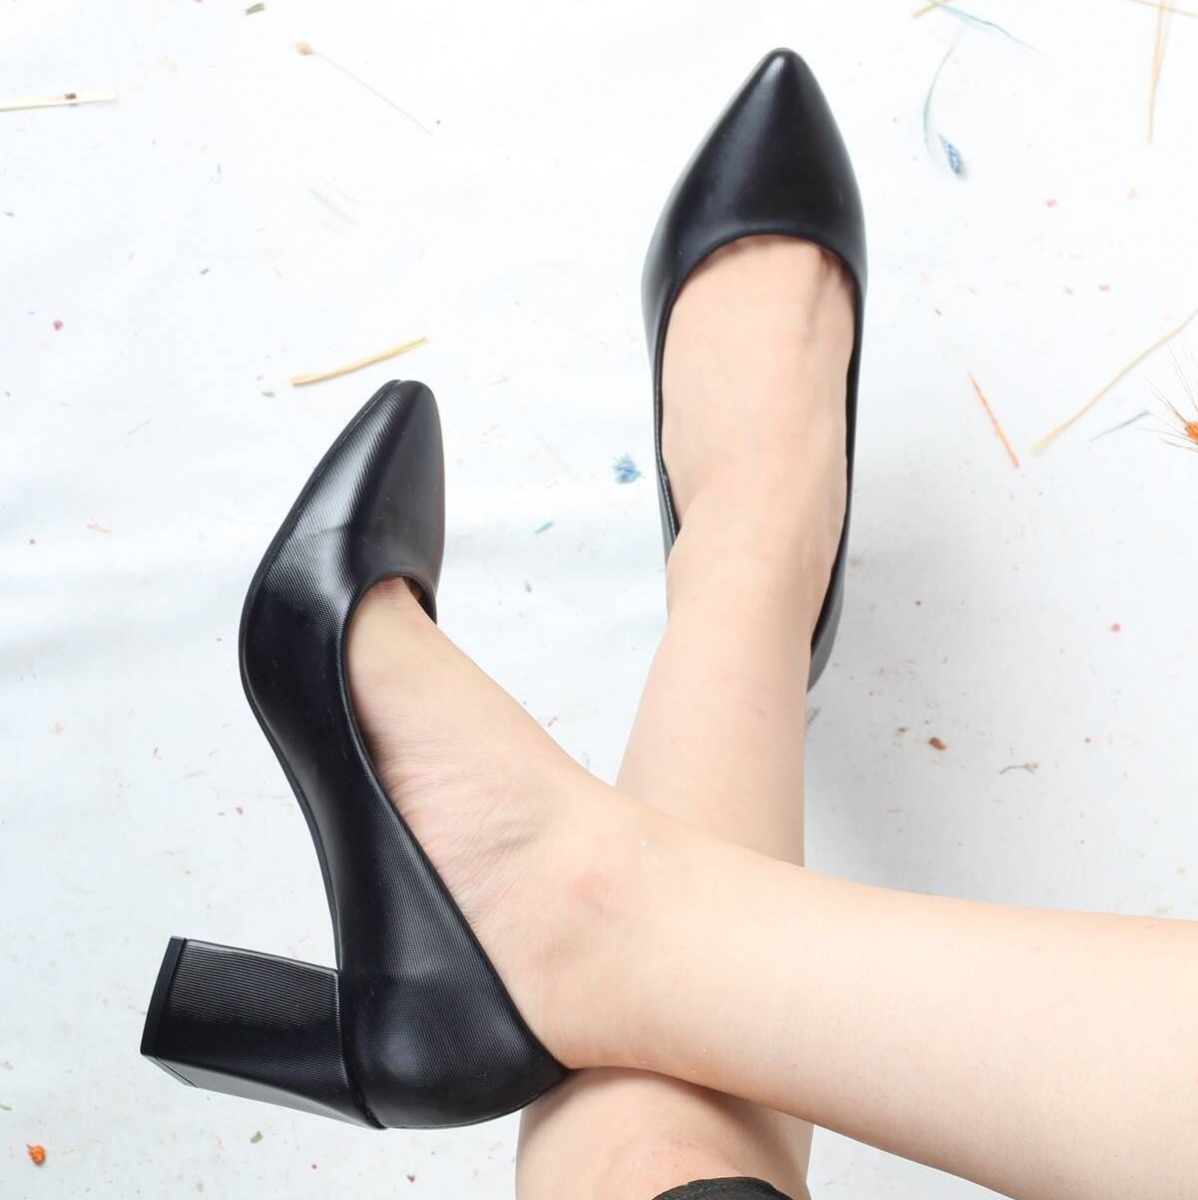 Flo Parlak Siyah Kalın Köşeli Topuk Stiletto Kadın Ayakkabı - Erkly. 2